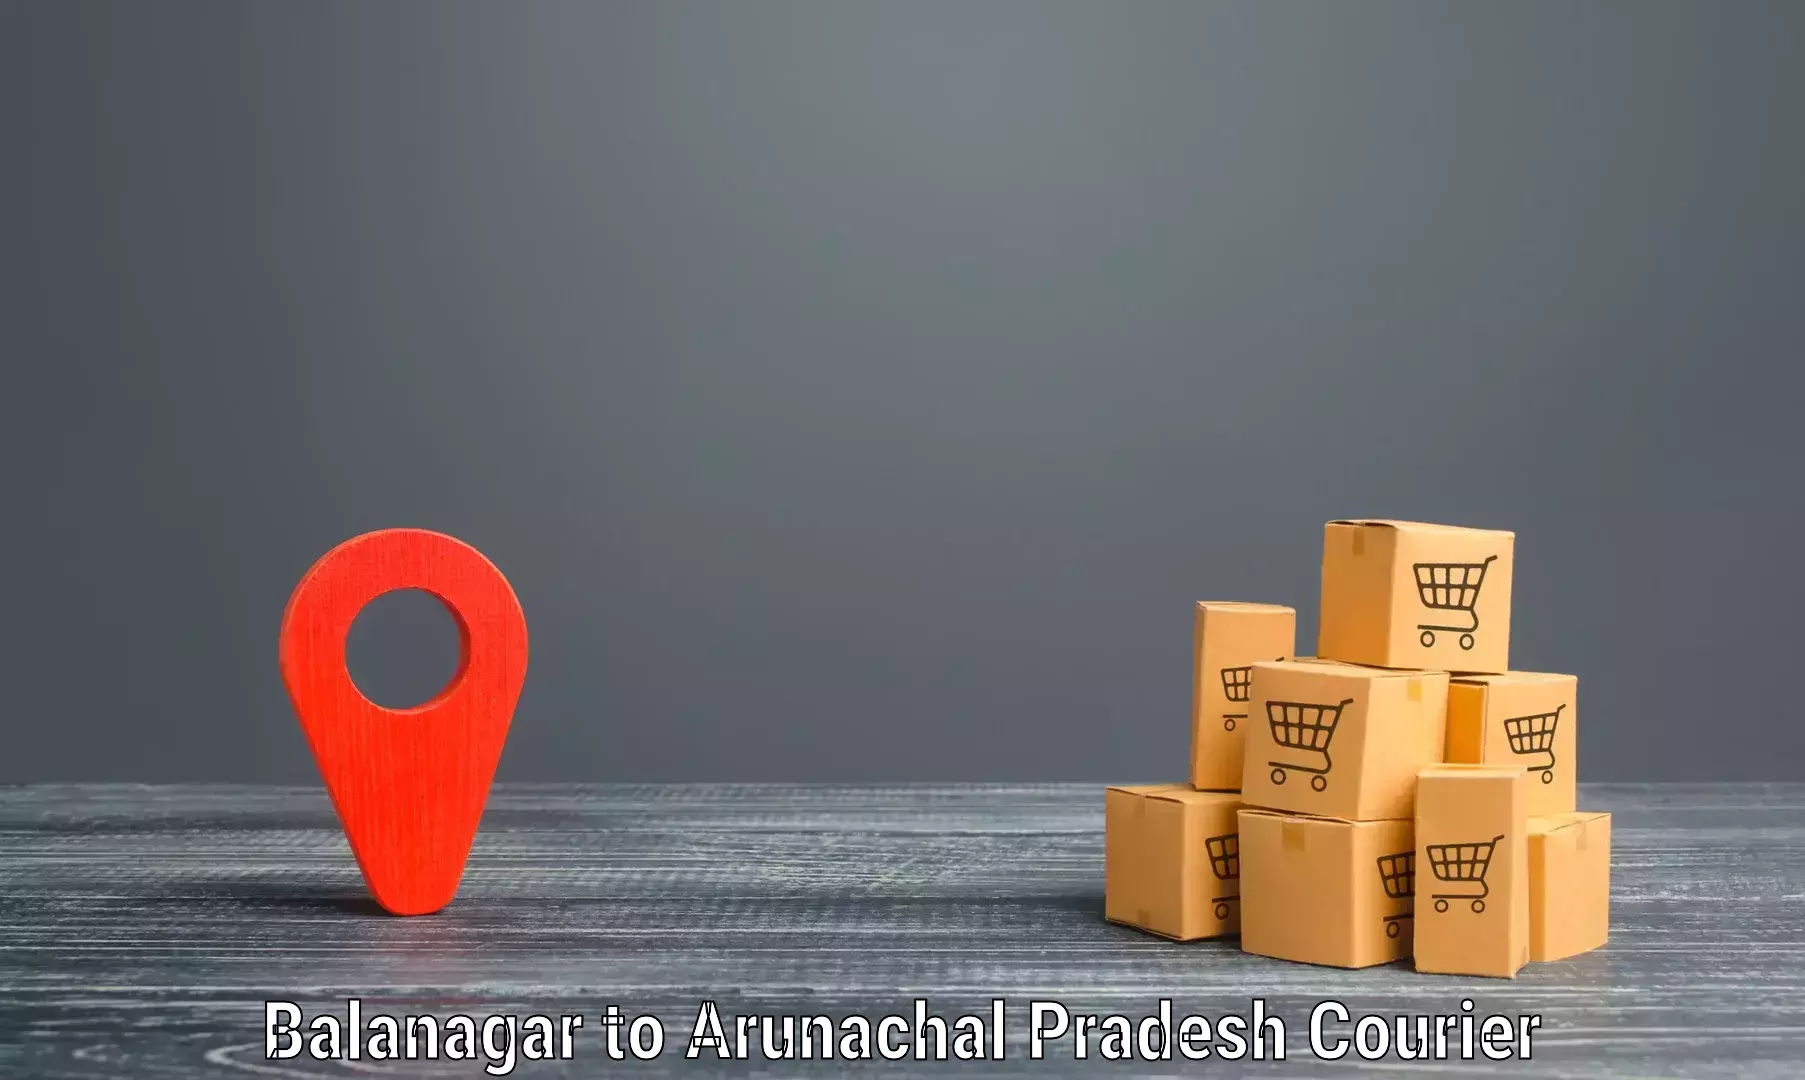 Modern courier technology Balanagar to Namsai